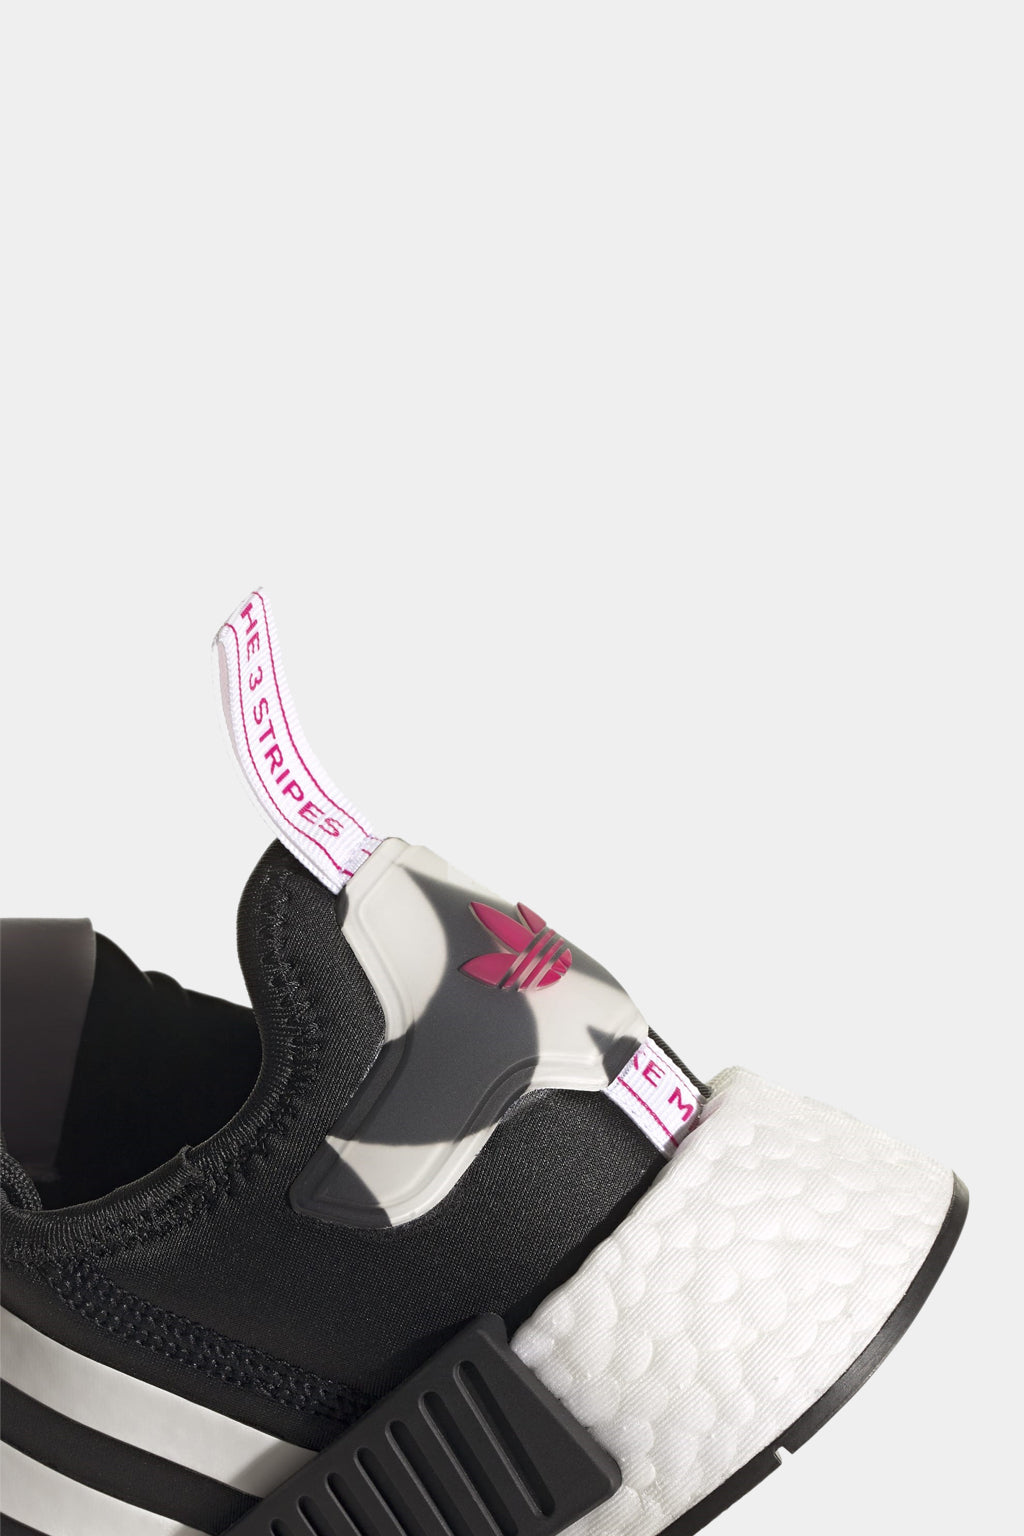 Adidas Originals - Marimekko Nmd_r1 Shoes